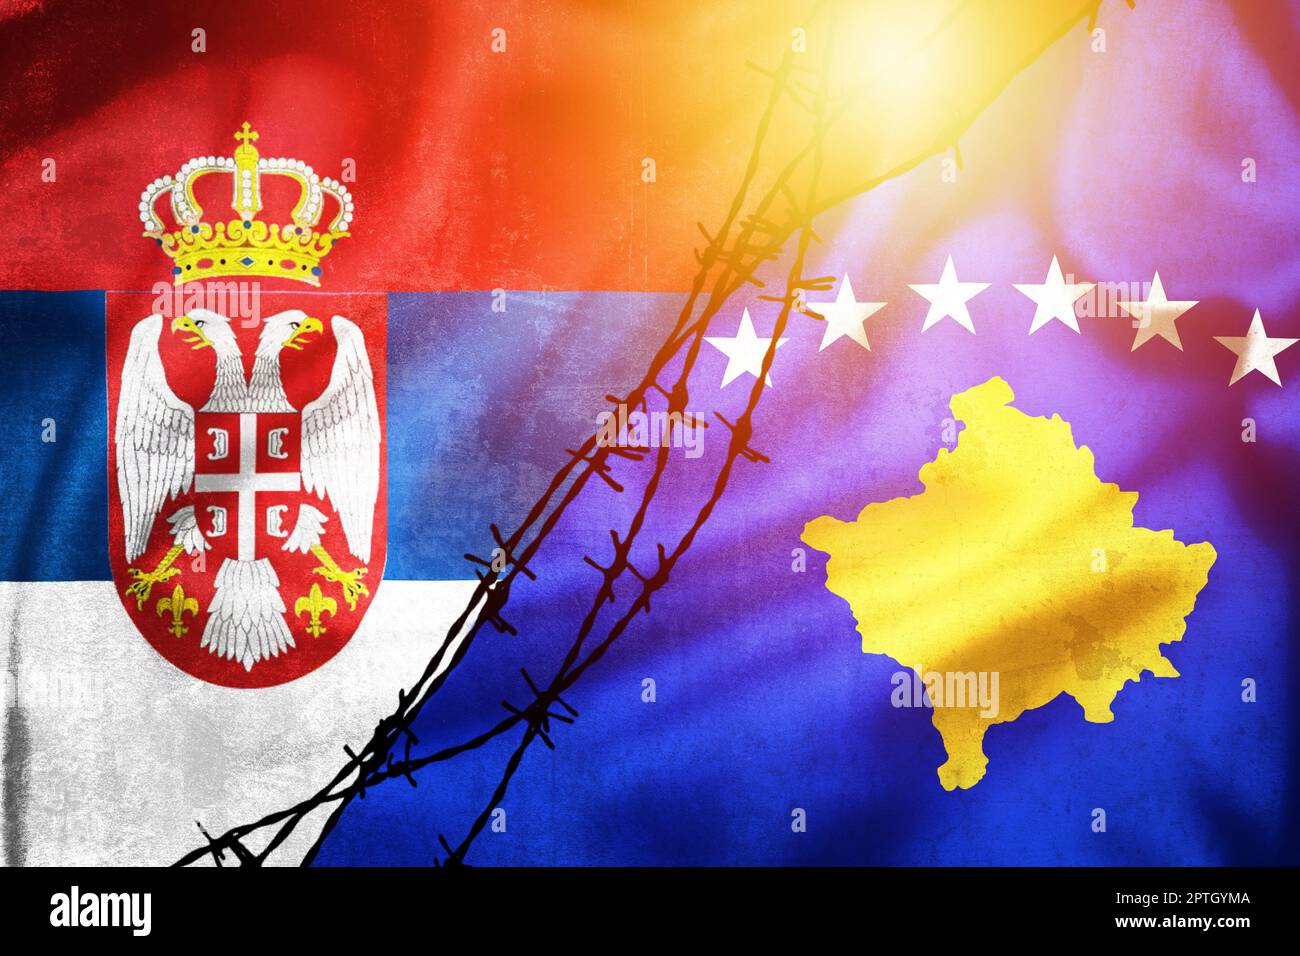 Grunge Flaggen von Serbien und Kosovo geteilt durch Stacheldraht Sonne Dunst Illustration, Konzept der angespannten Beziehungen zwischen Serbien und Kosovo Stockfoto